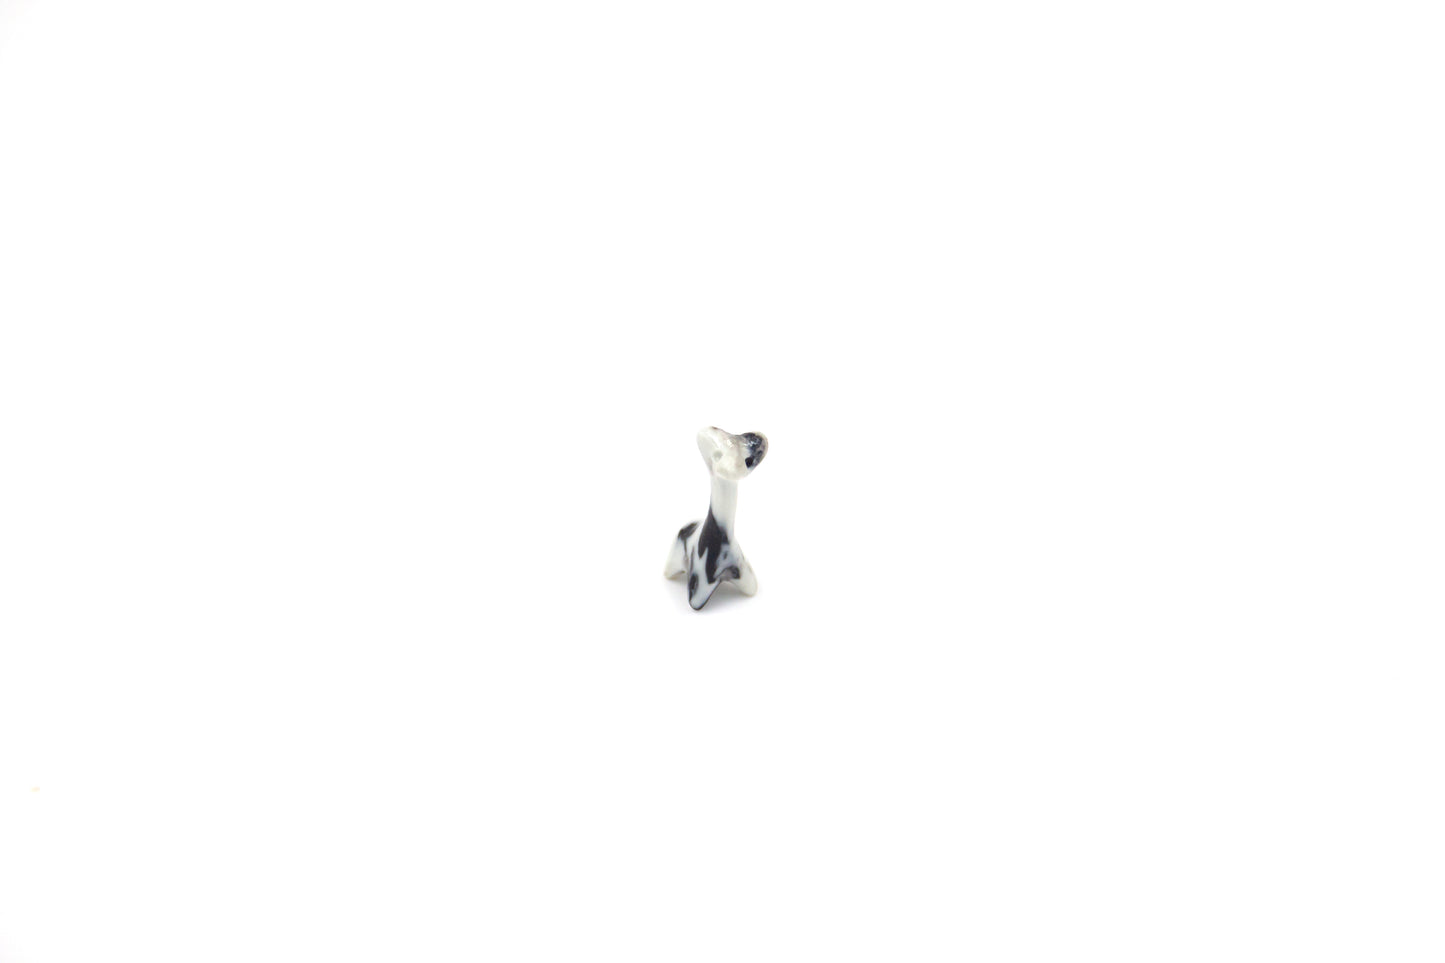 Losowe zwierze “Werlingtin marmurowy”